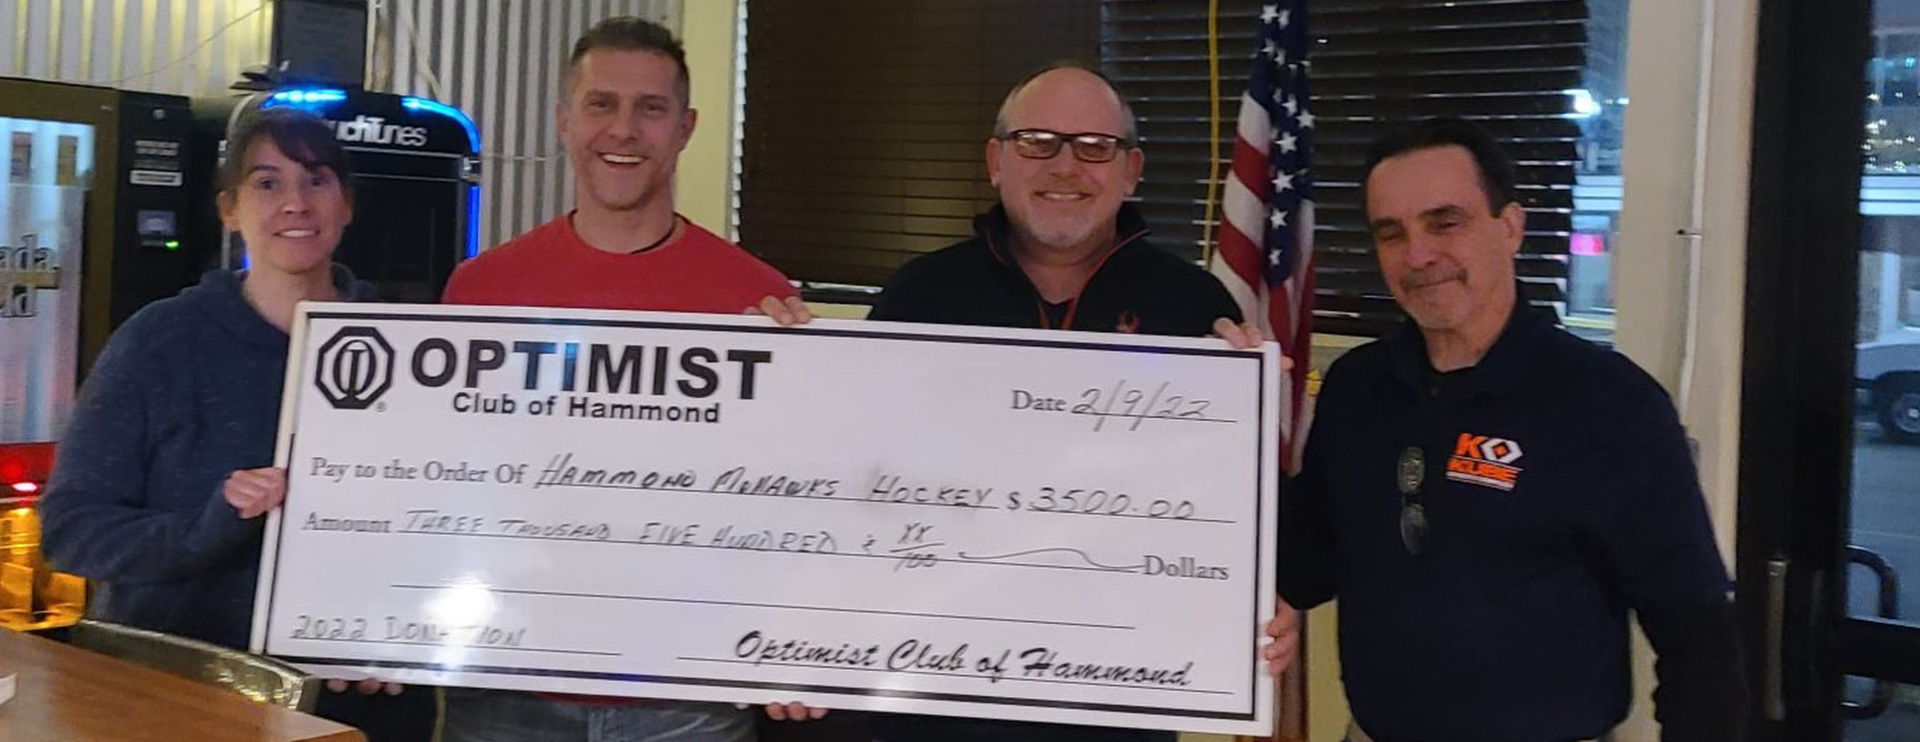 Optimist Club of Hammond, Indiana